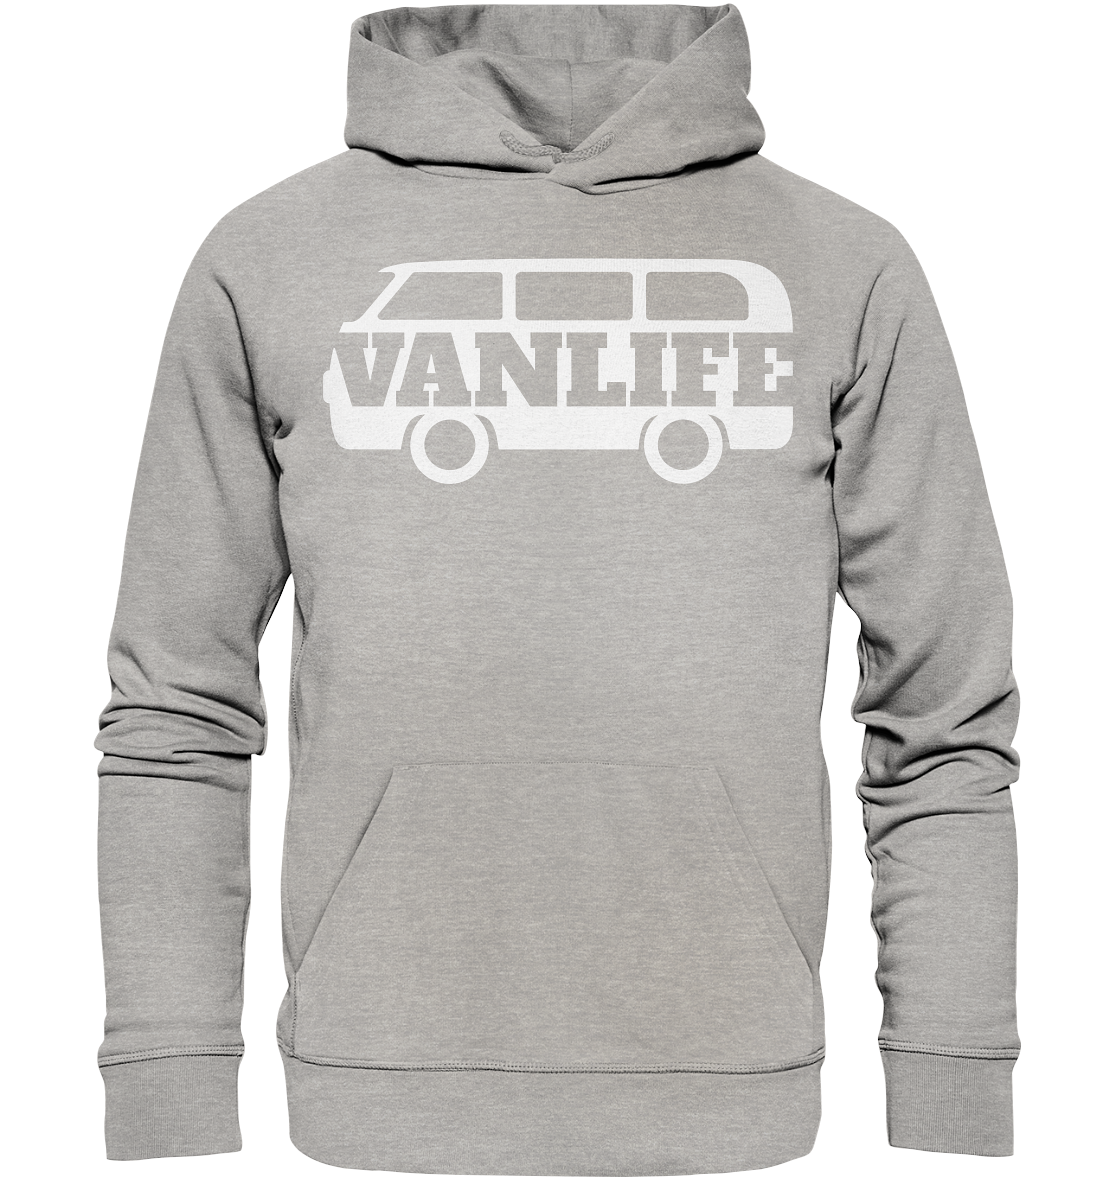 vanlife - Organic Basic Hoodie